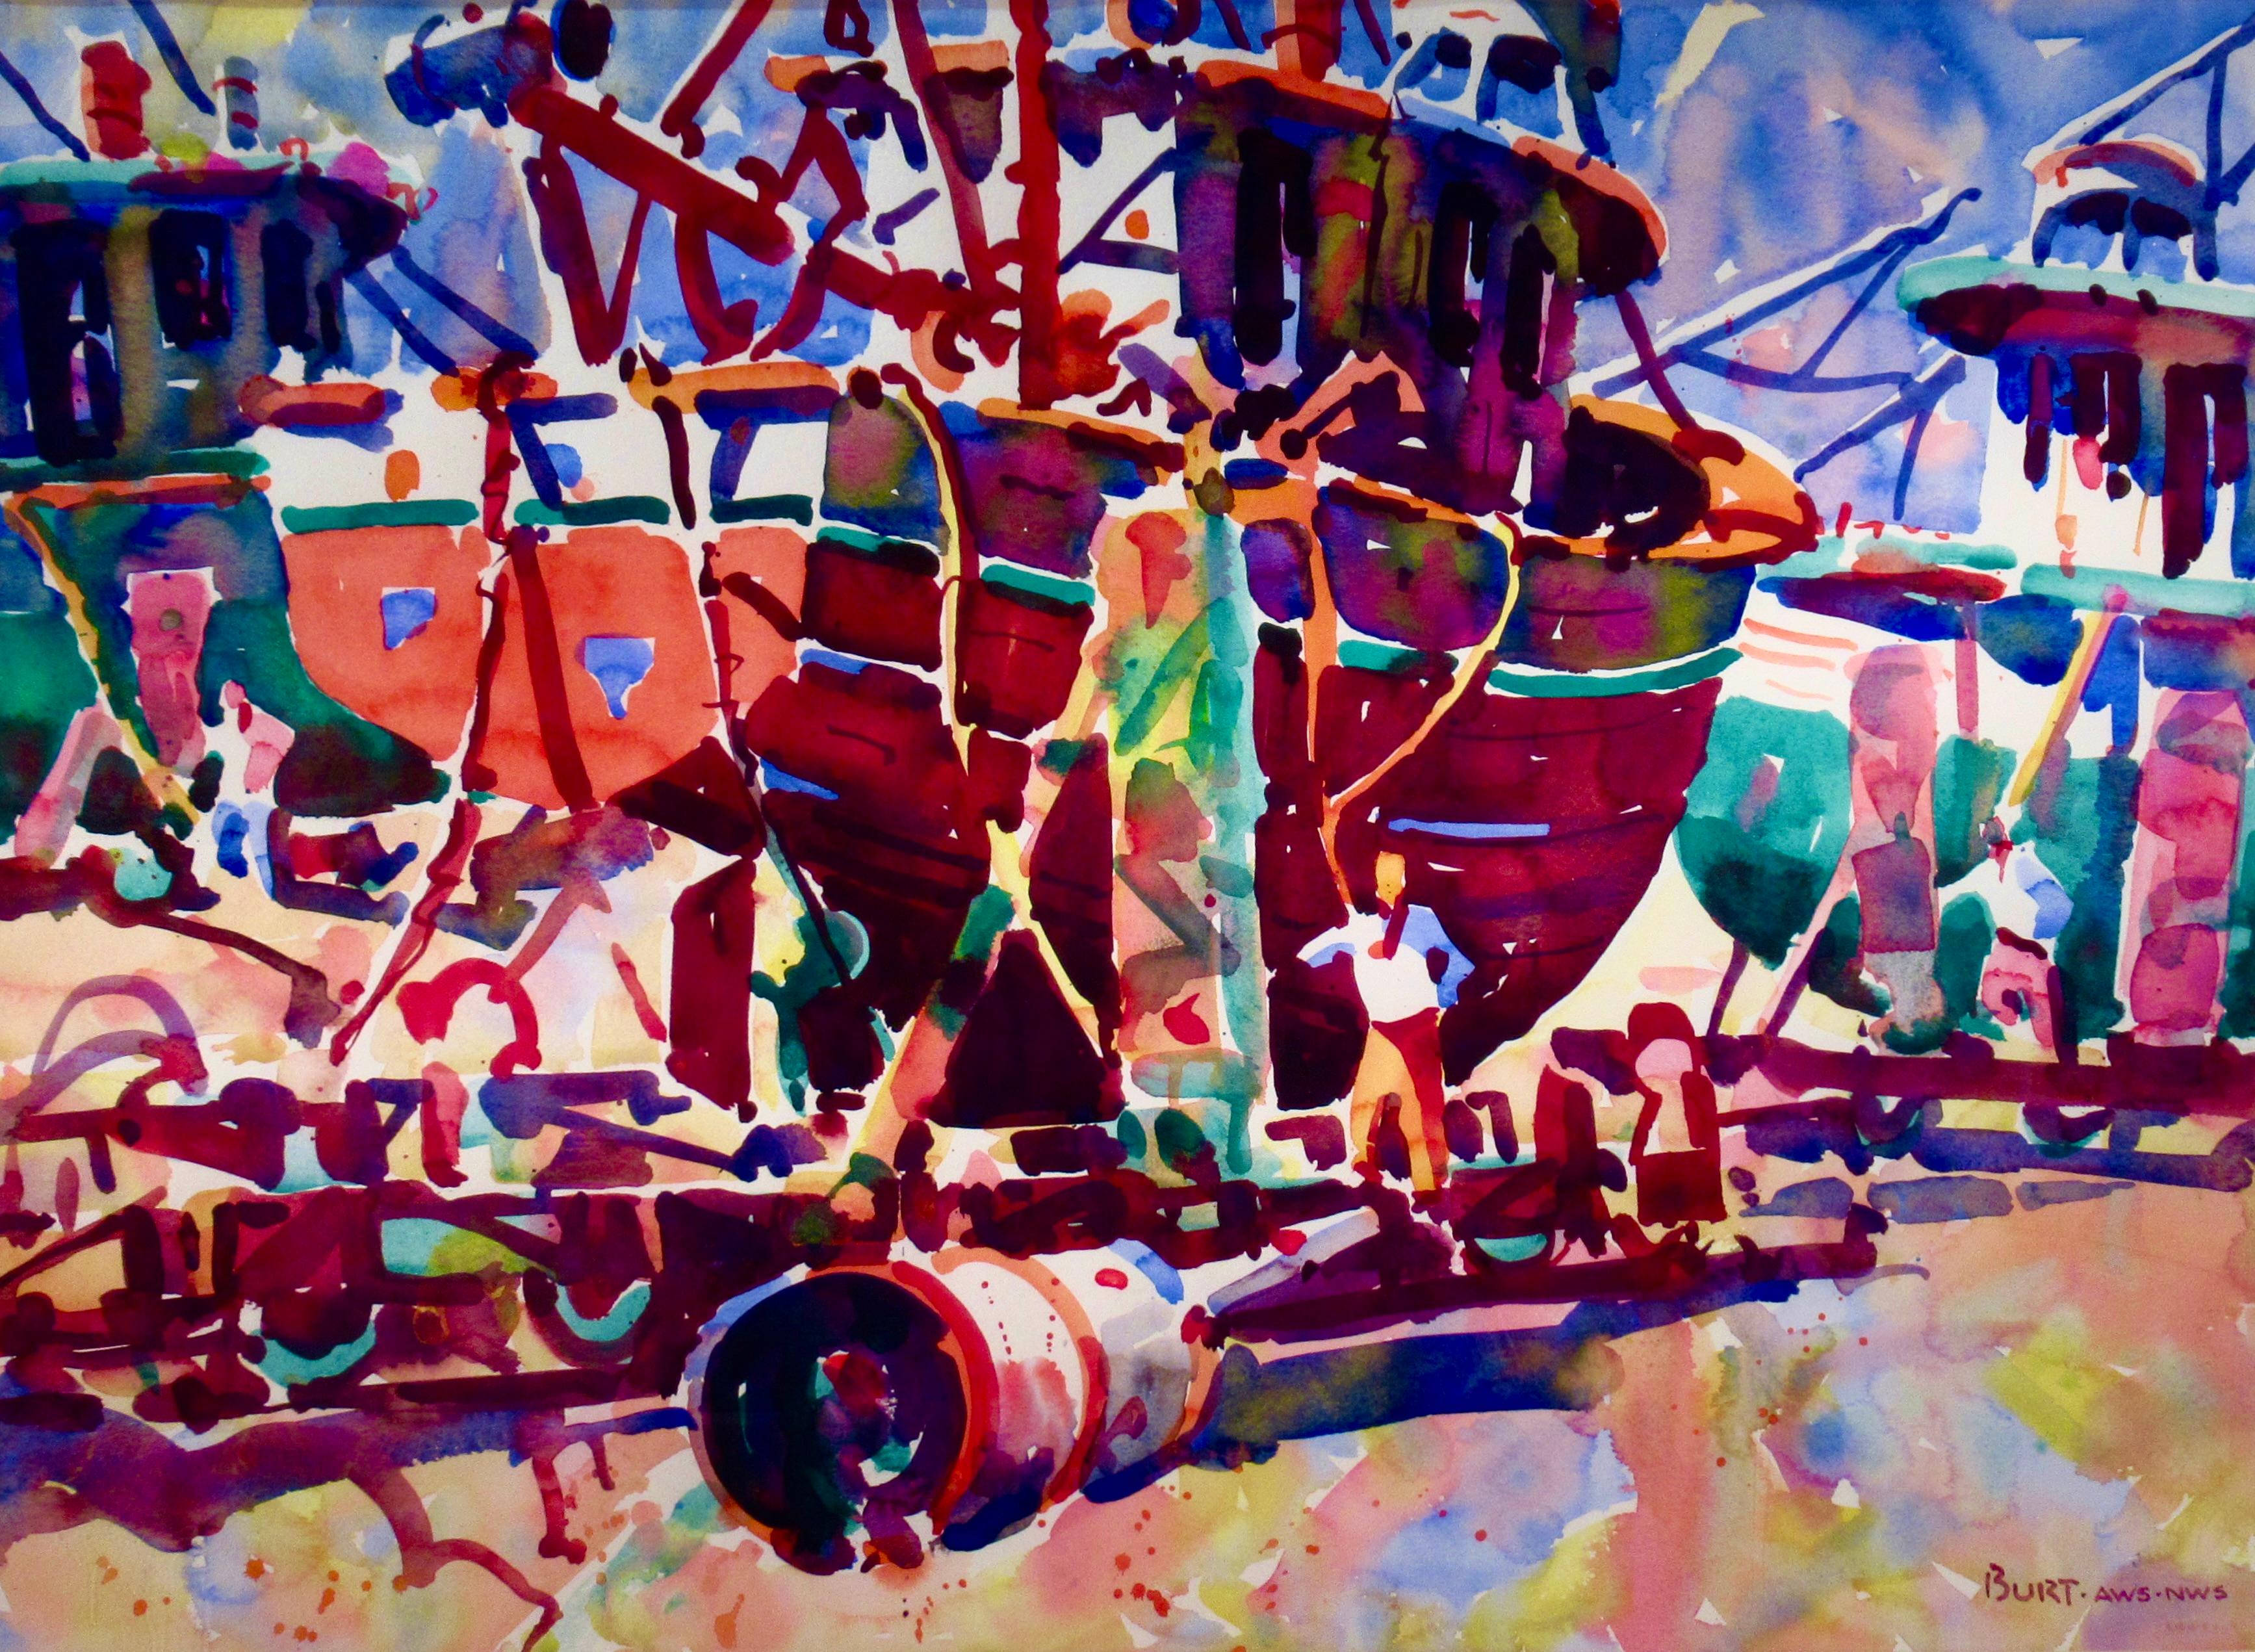 At the dock - Art by Allen Daniel (Dan) Burt